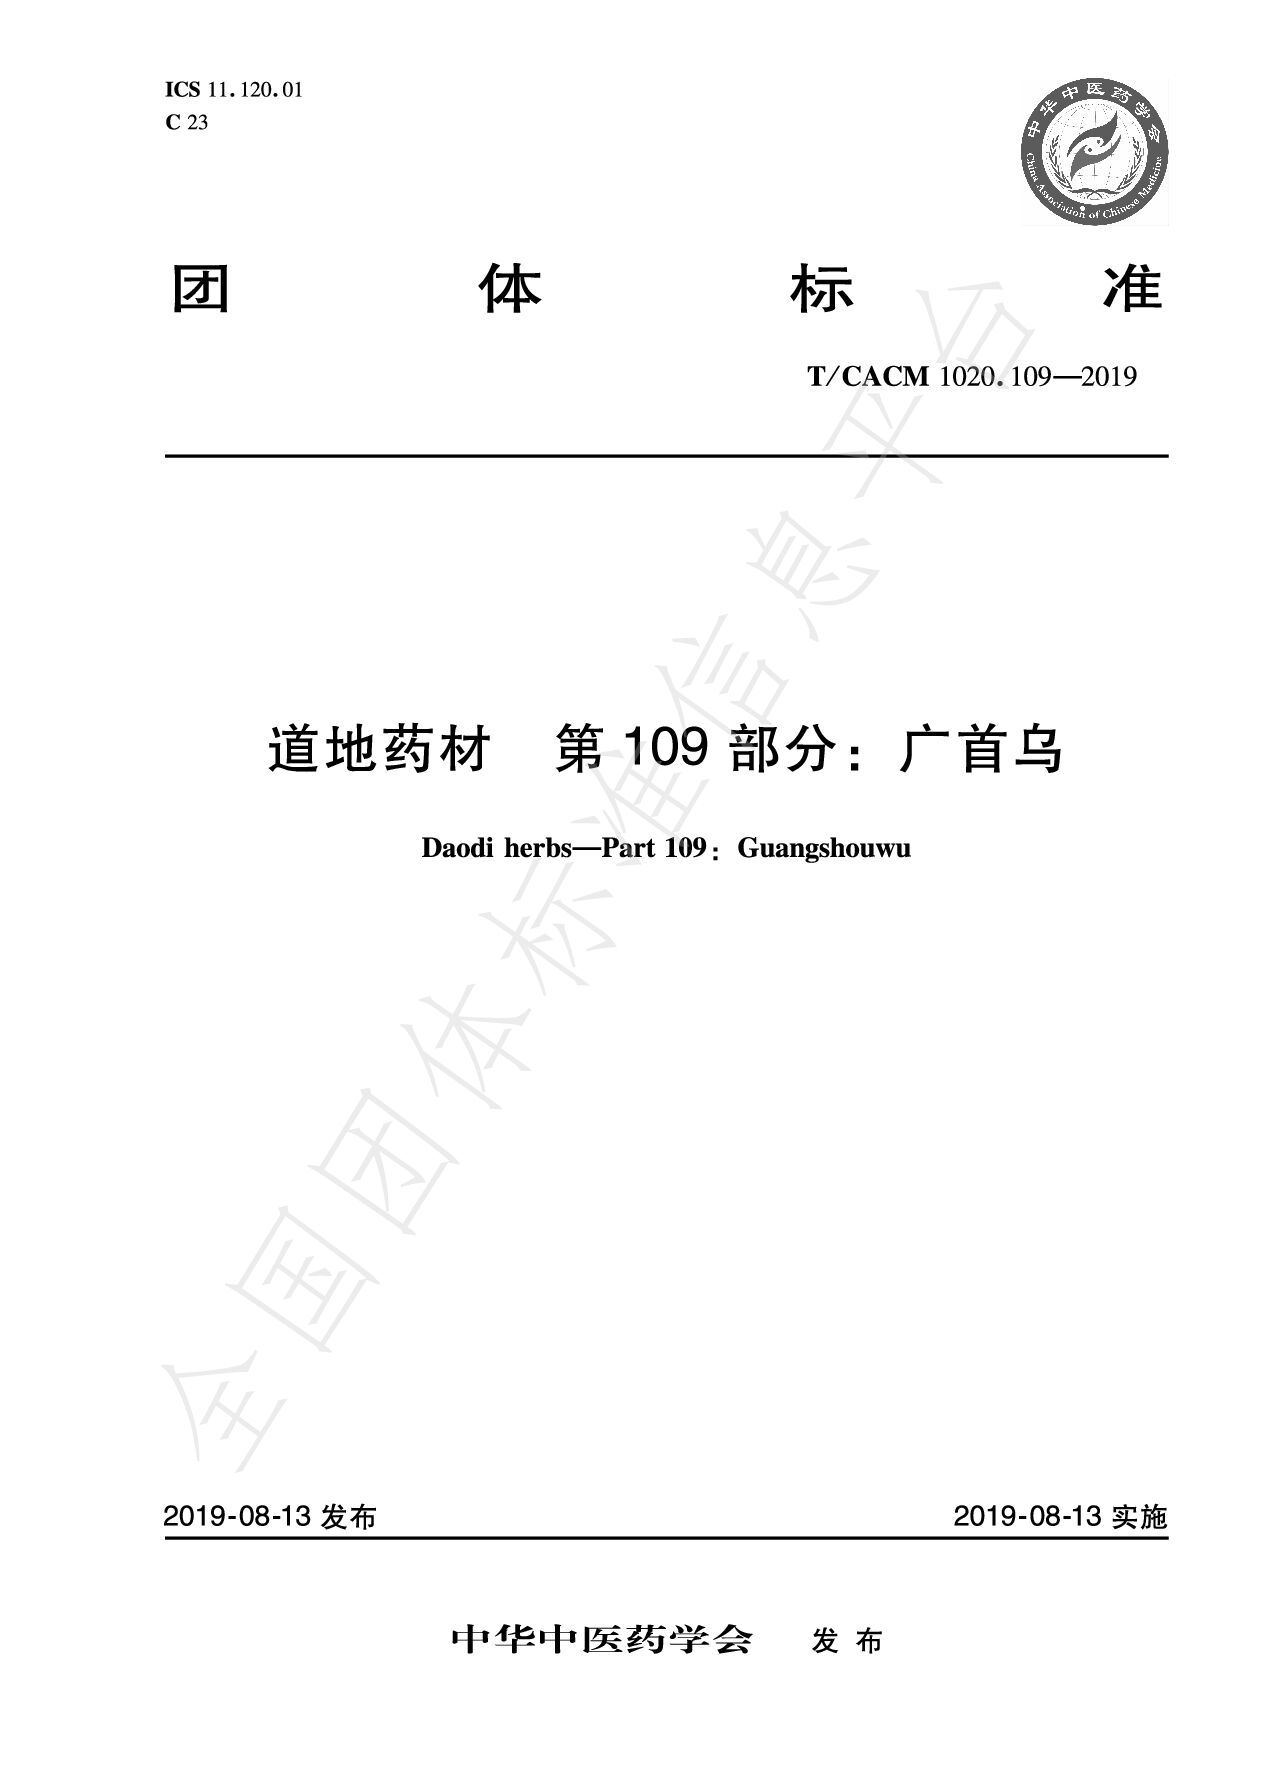 T/CACM 1020.109-2019封面图